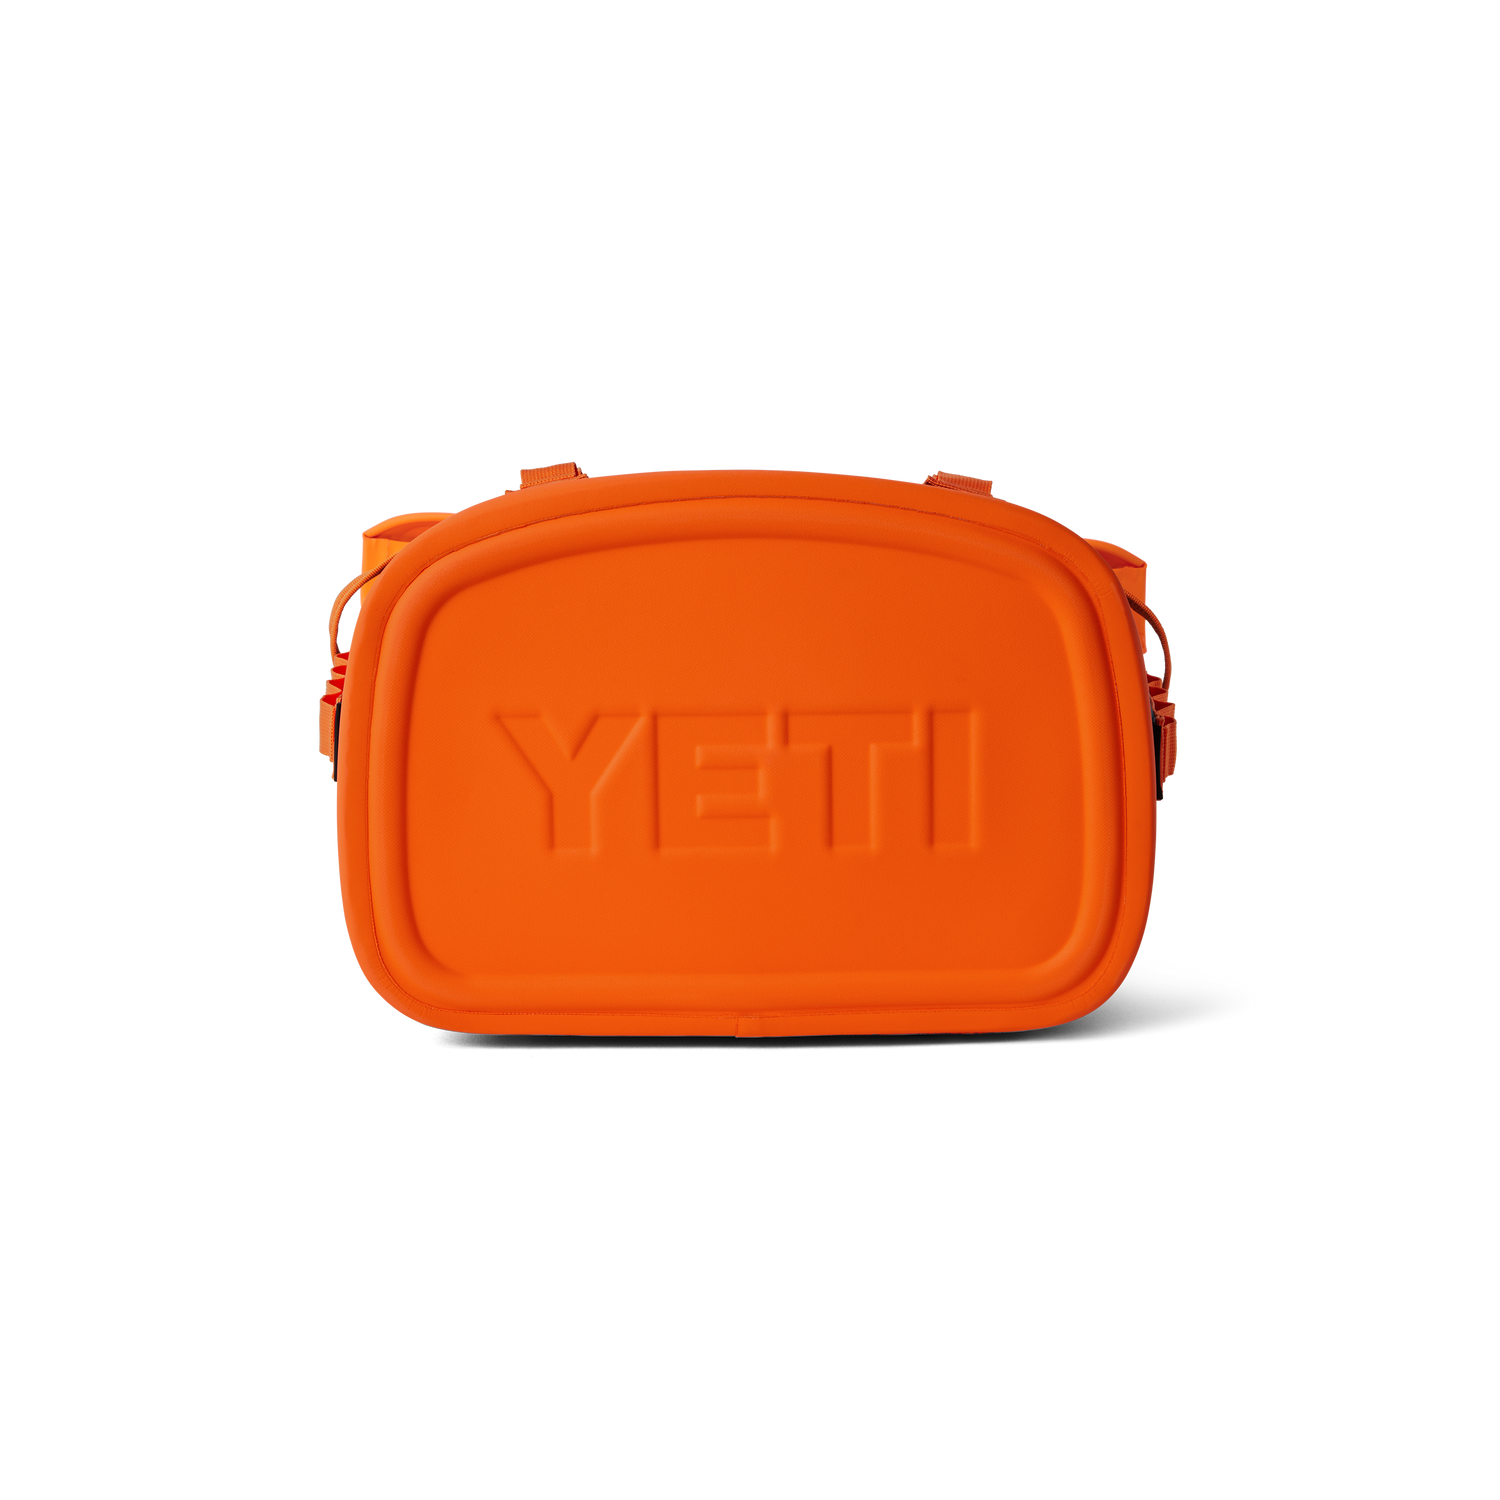 YETI Hopper® M20 Backpack Soft Cooler Teal/Orange